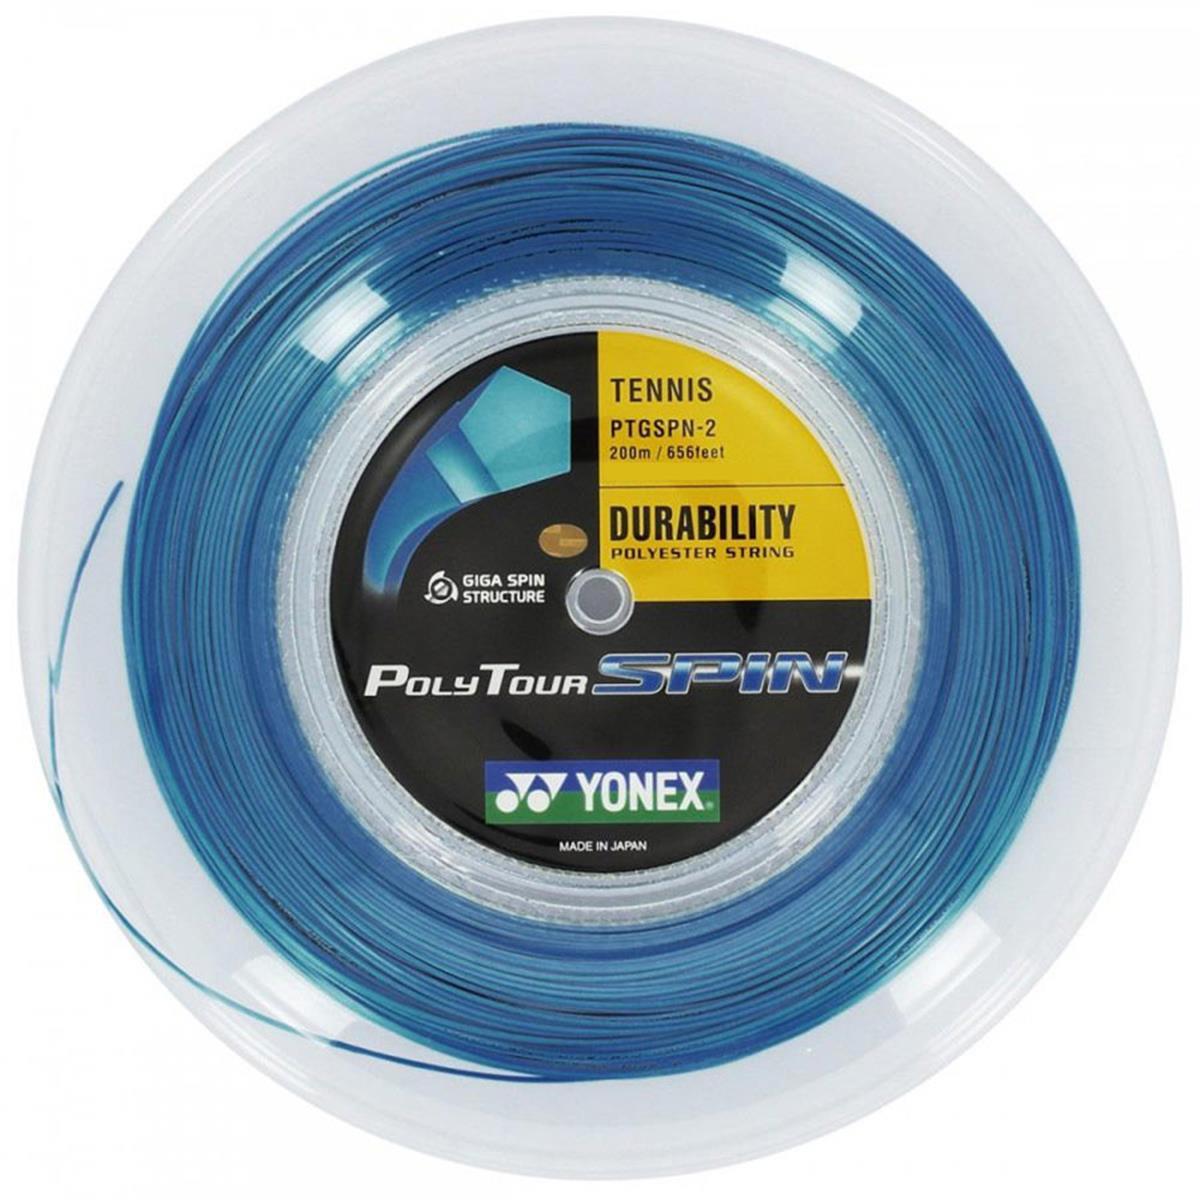 Yonex Polytour Spin 1.20mm 200m Tennis String